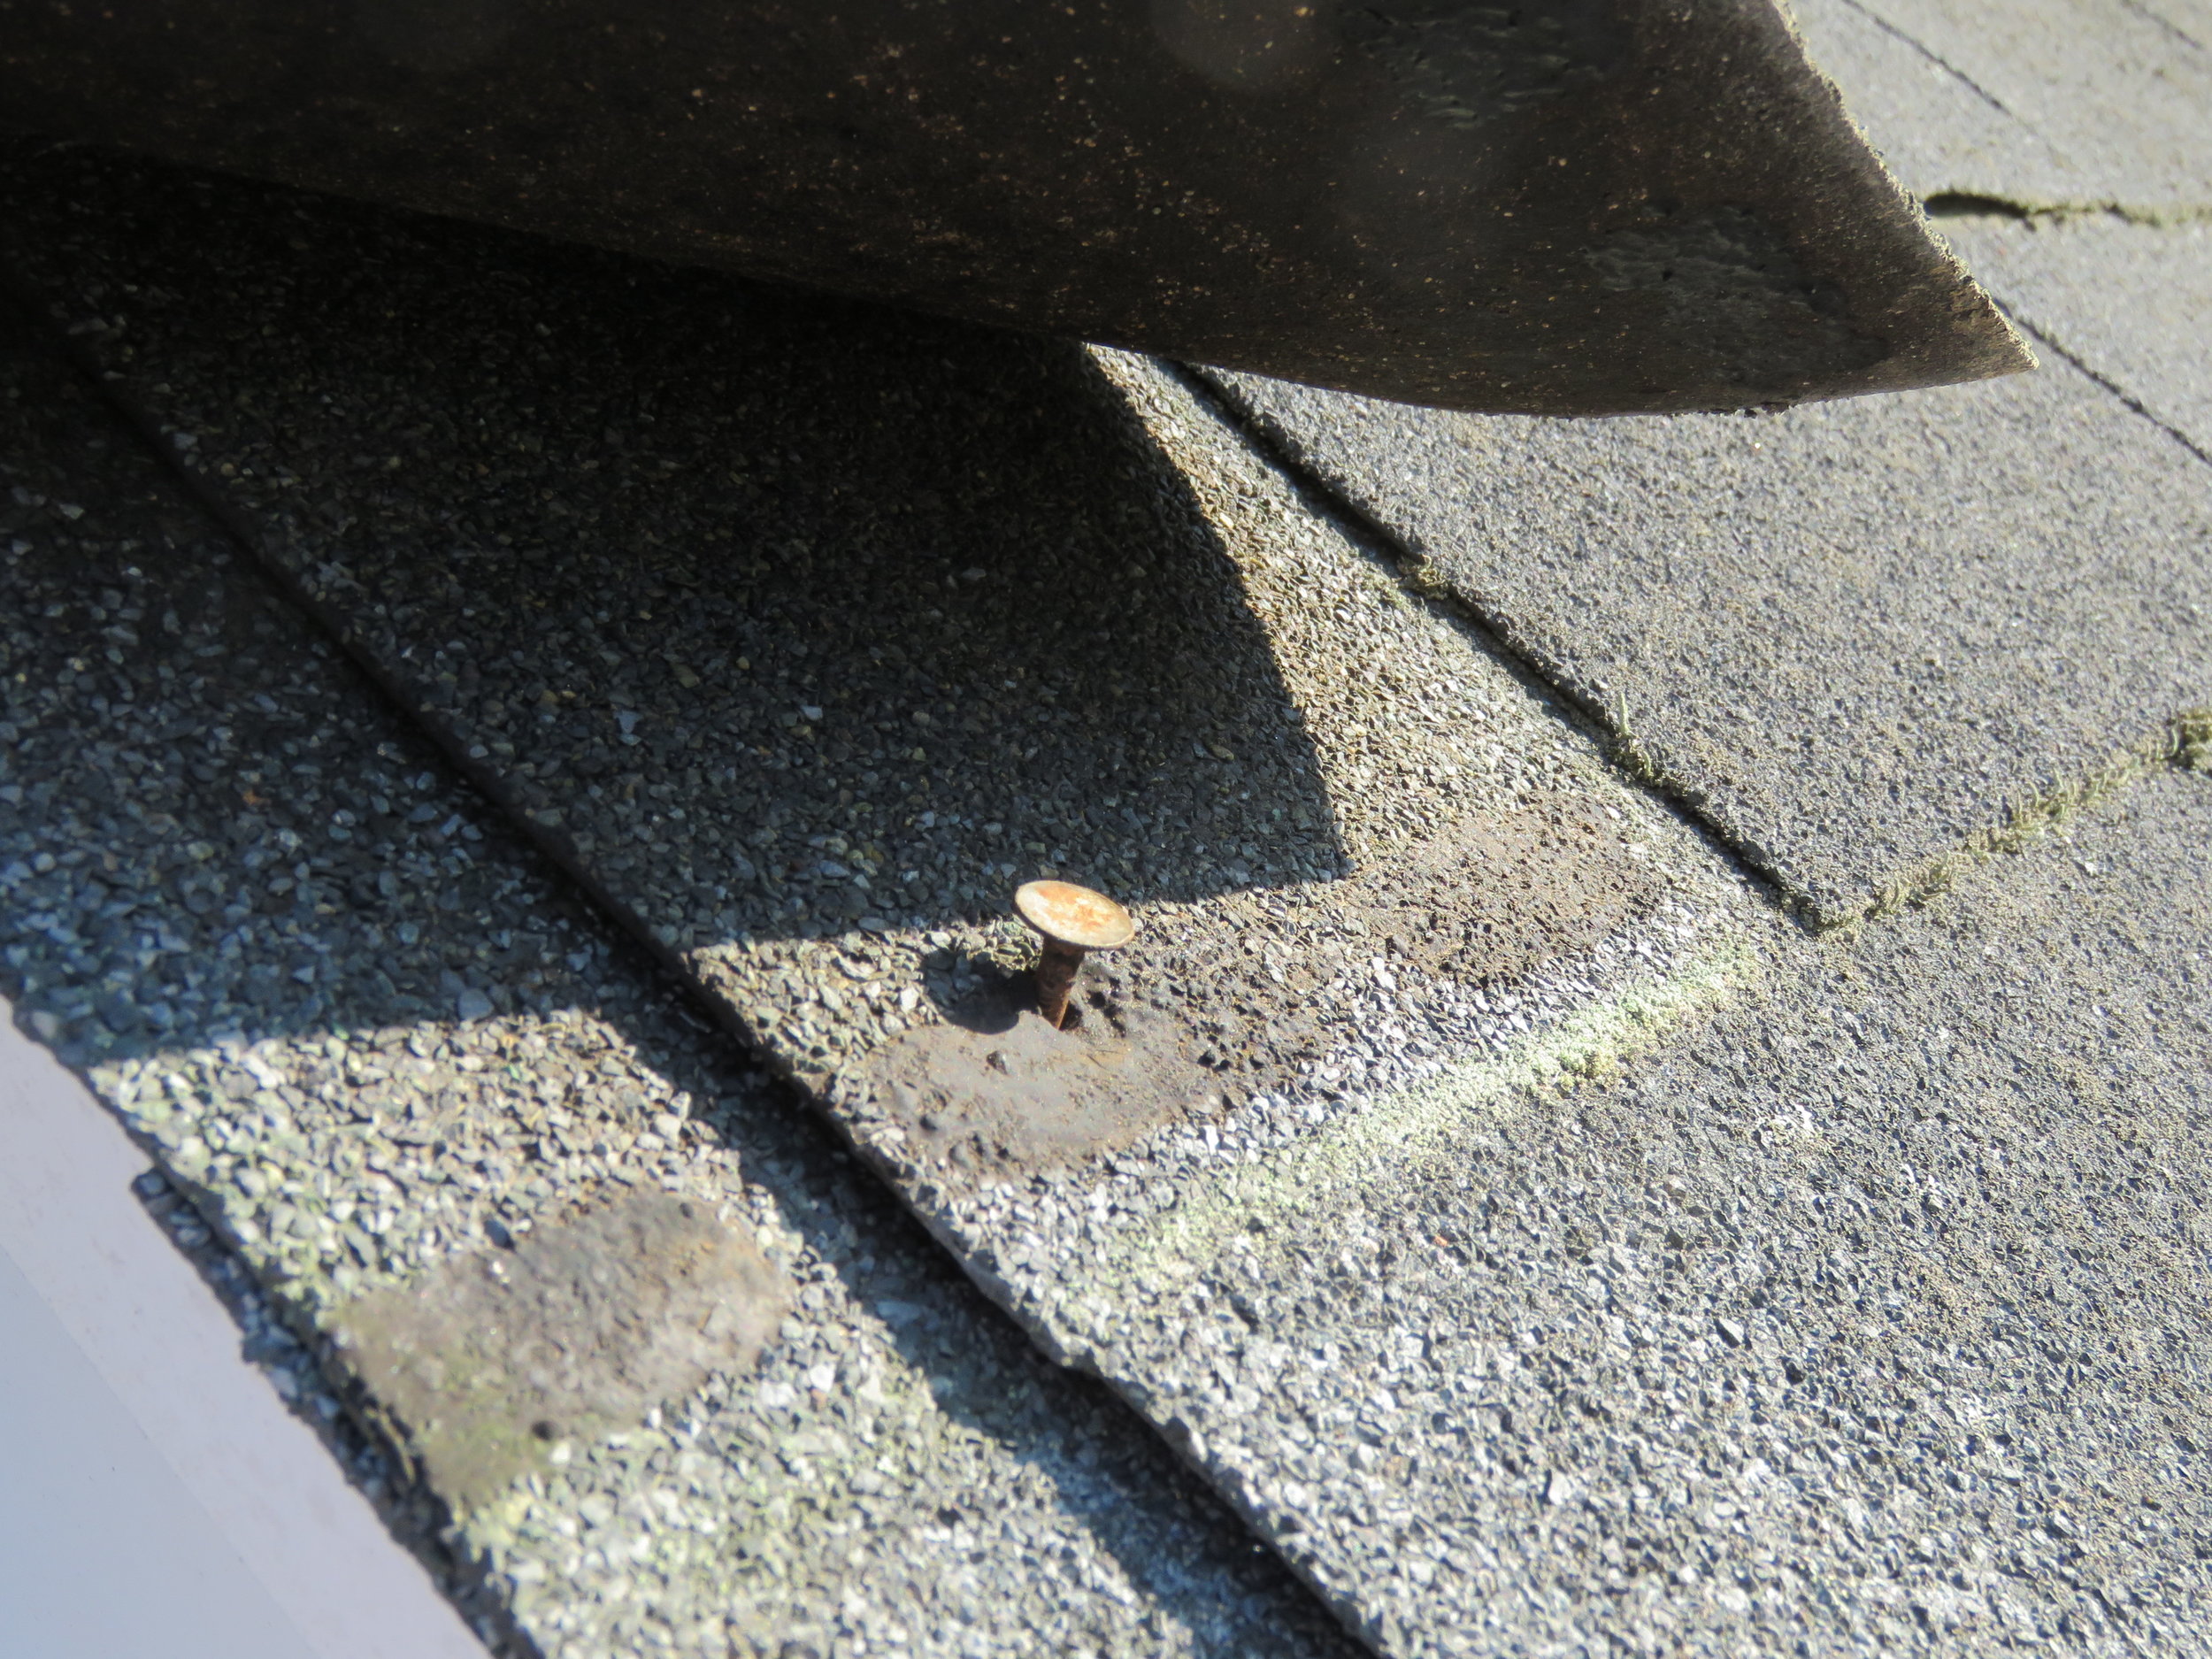 A nail pop underneath the tab of an asphalt shingle.